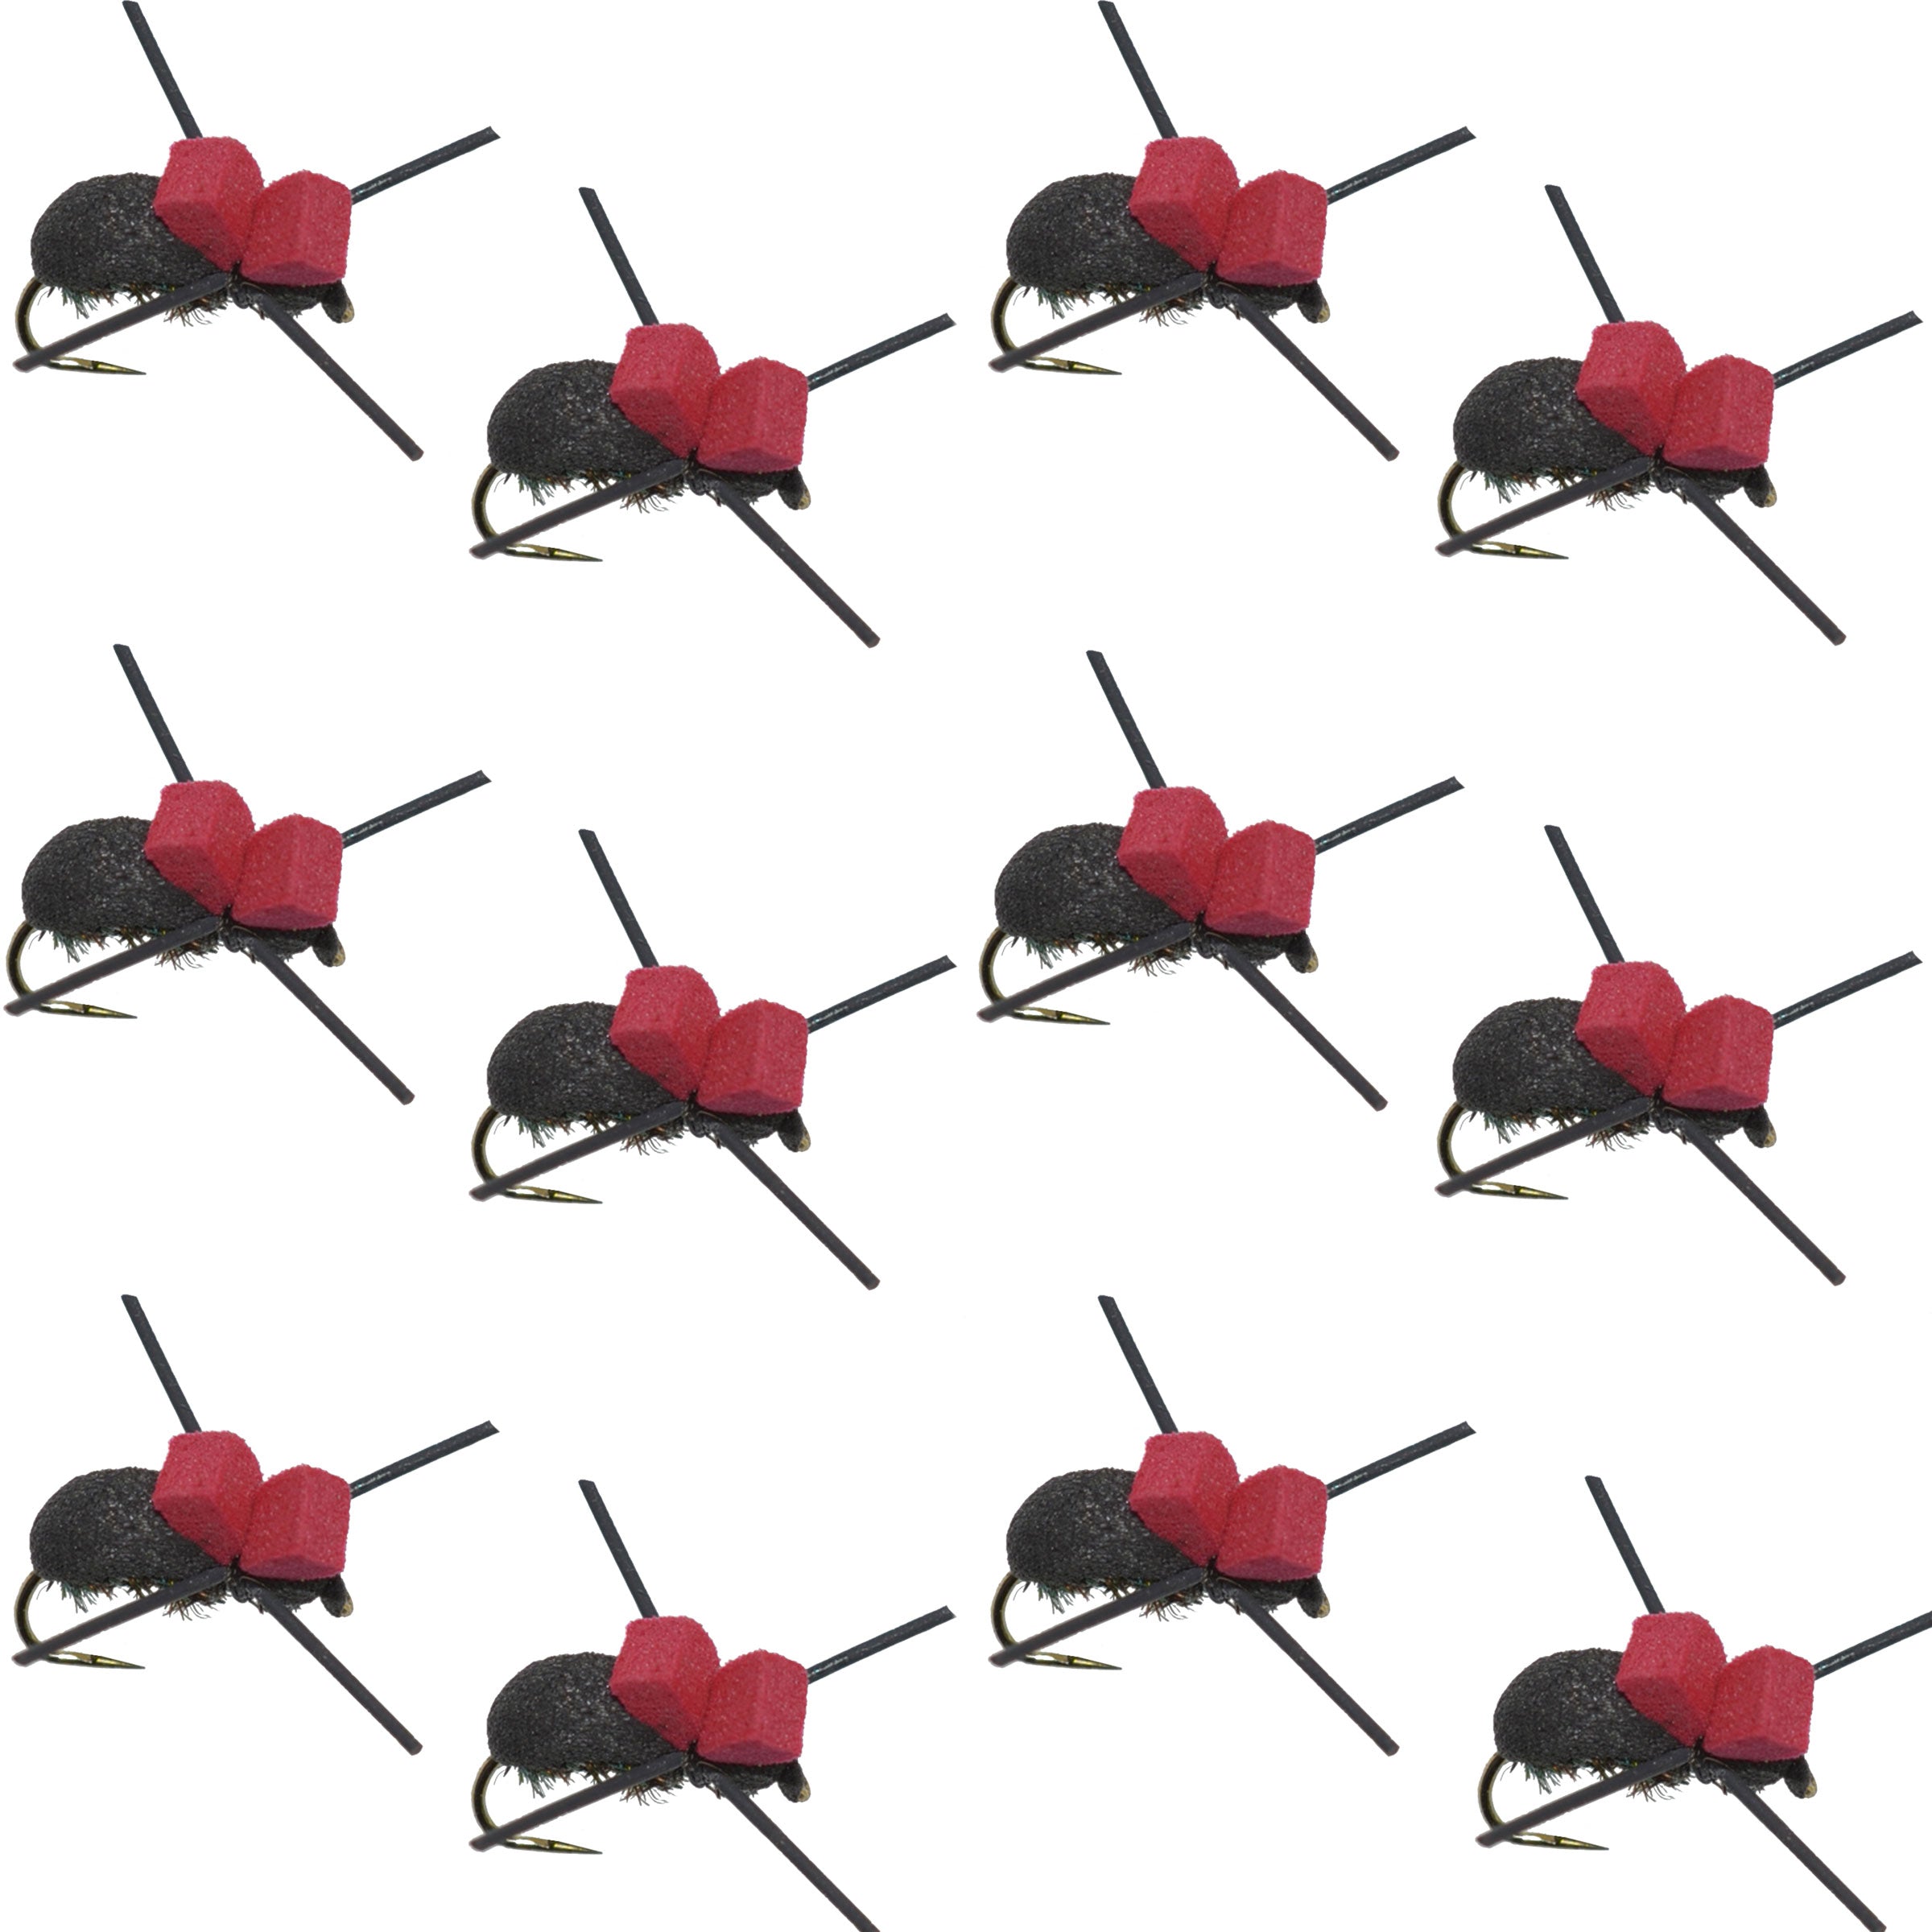 Moscas de pesca con mosca seca para trucha terrestre, escarabajo de espuma negra, parte superior roja, 1 docena de moscas, tamaño 14